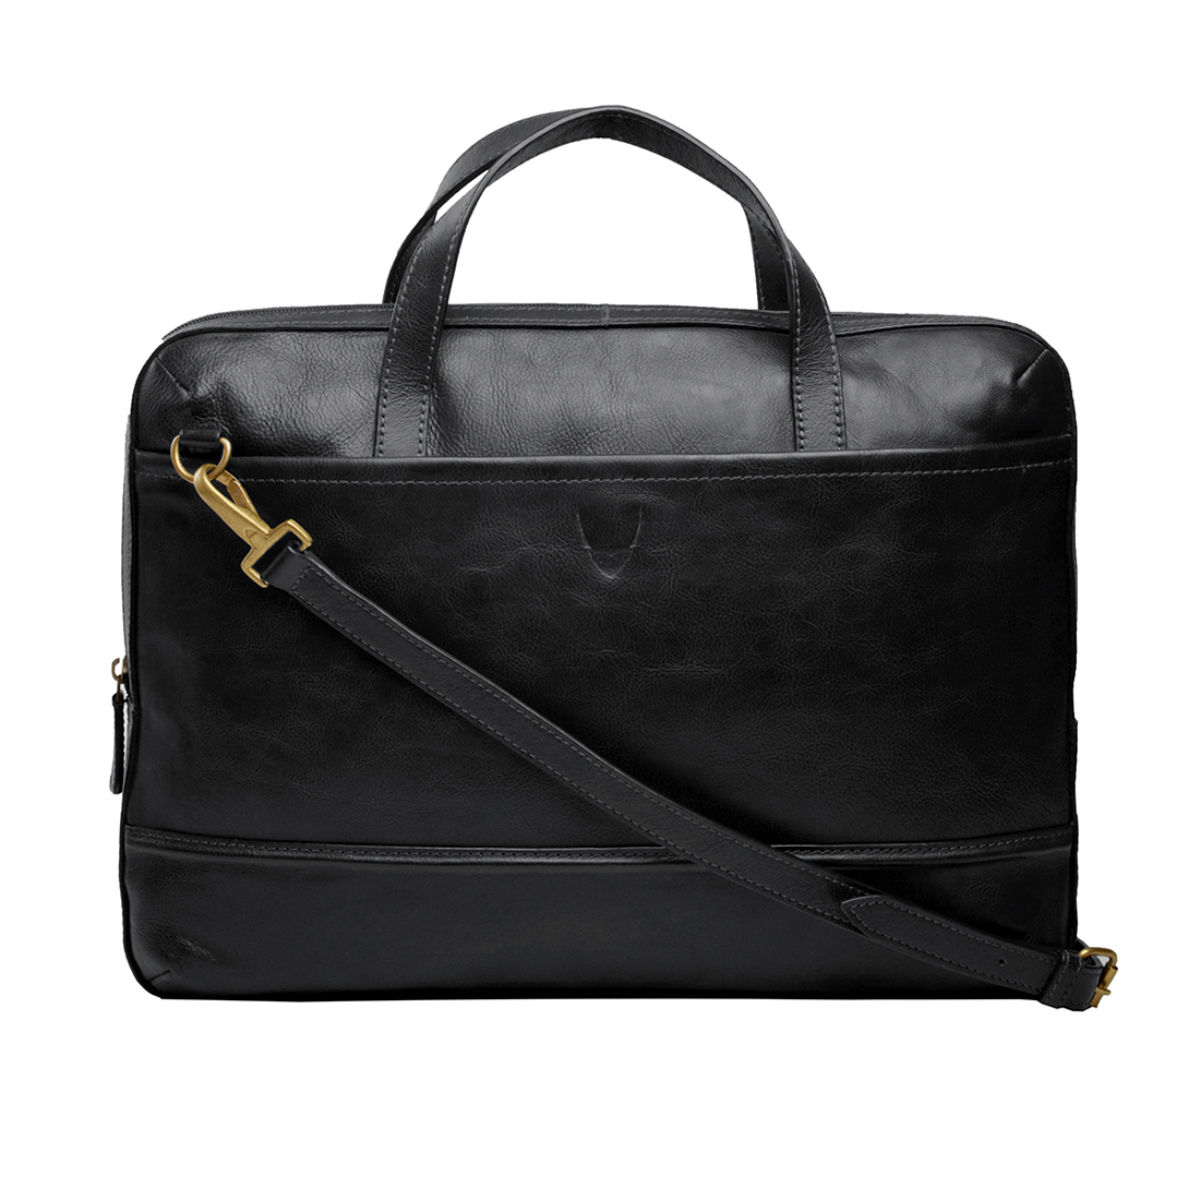 Hidesign Black Leather Messenger Bag Briefcase Laptop Bag | eBay